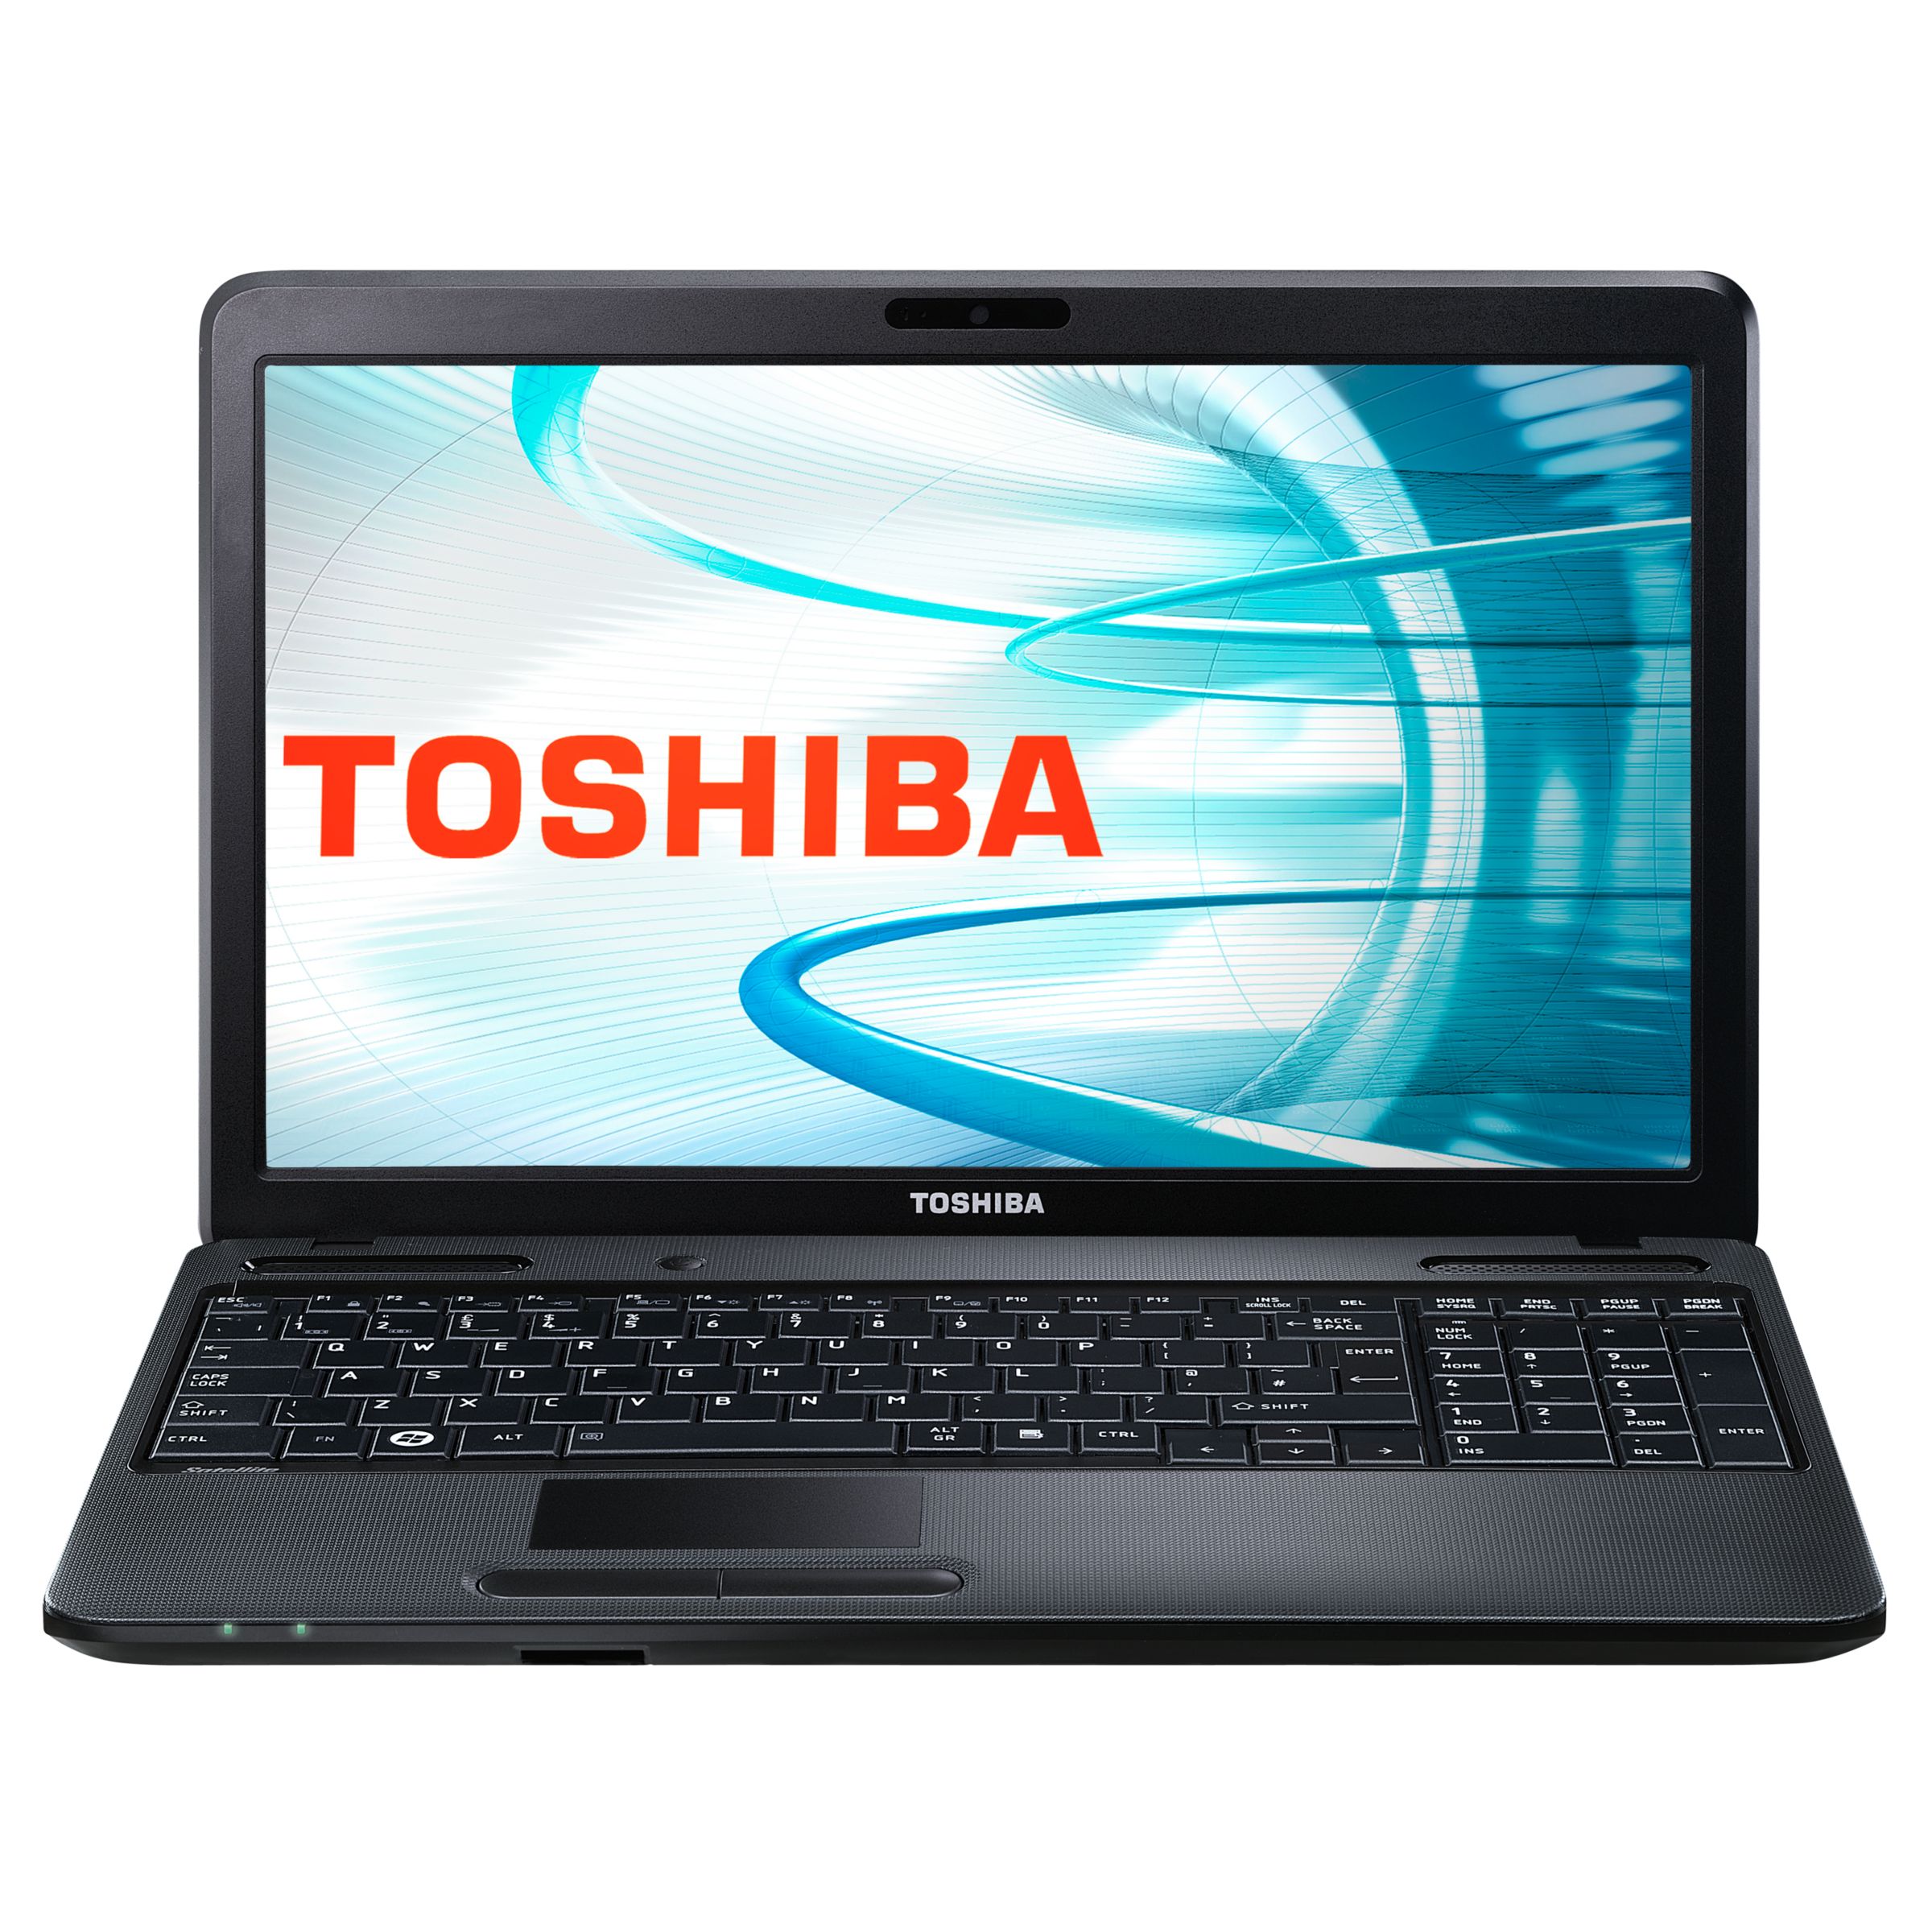 Toshiba Satellite C650-15Z Laptop, Intel Pentium, 320GB, 2.13GHz, 3GB RAM with 15.6 Inch Display at John Lewis